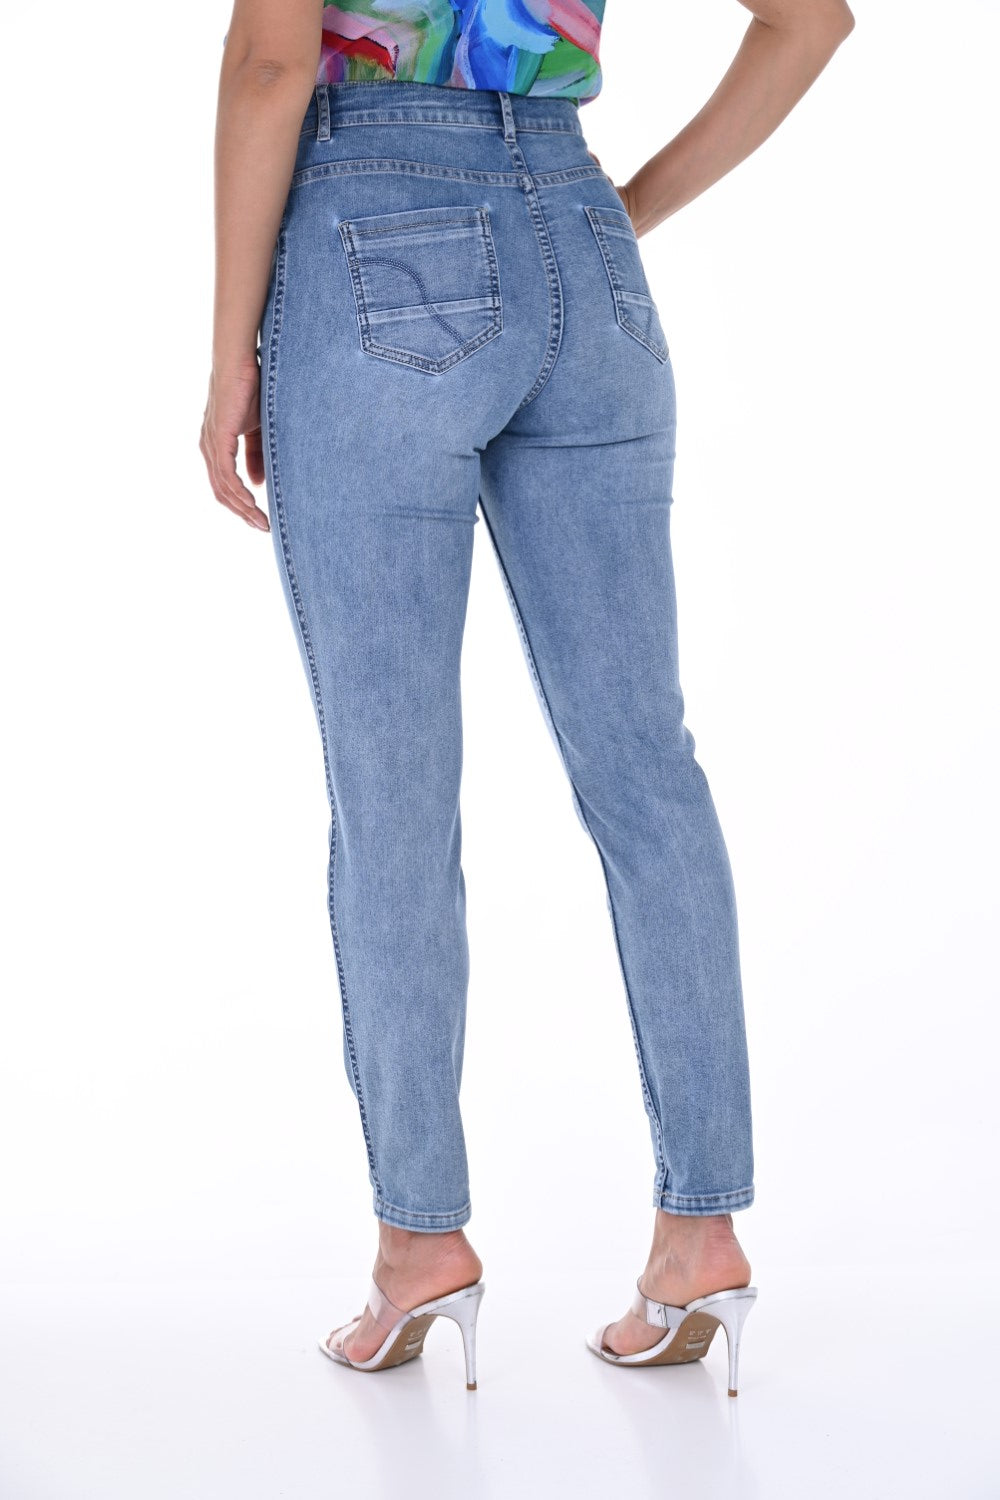 Frank Lyman Jeans reversibili 246248U Blu/Rosa